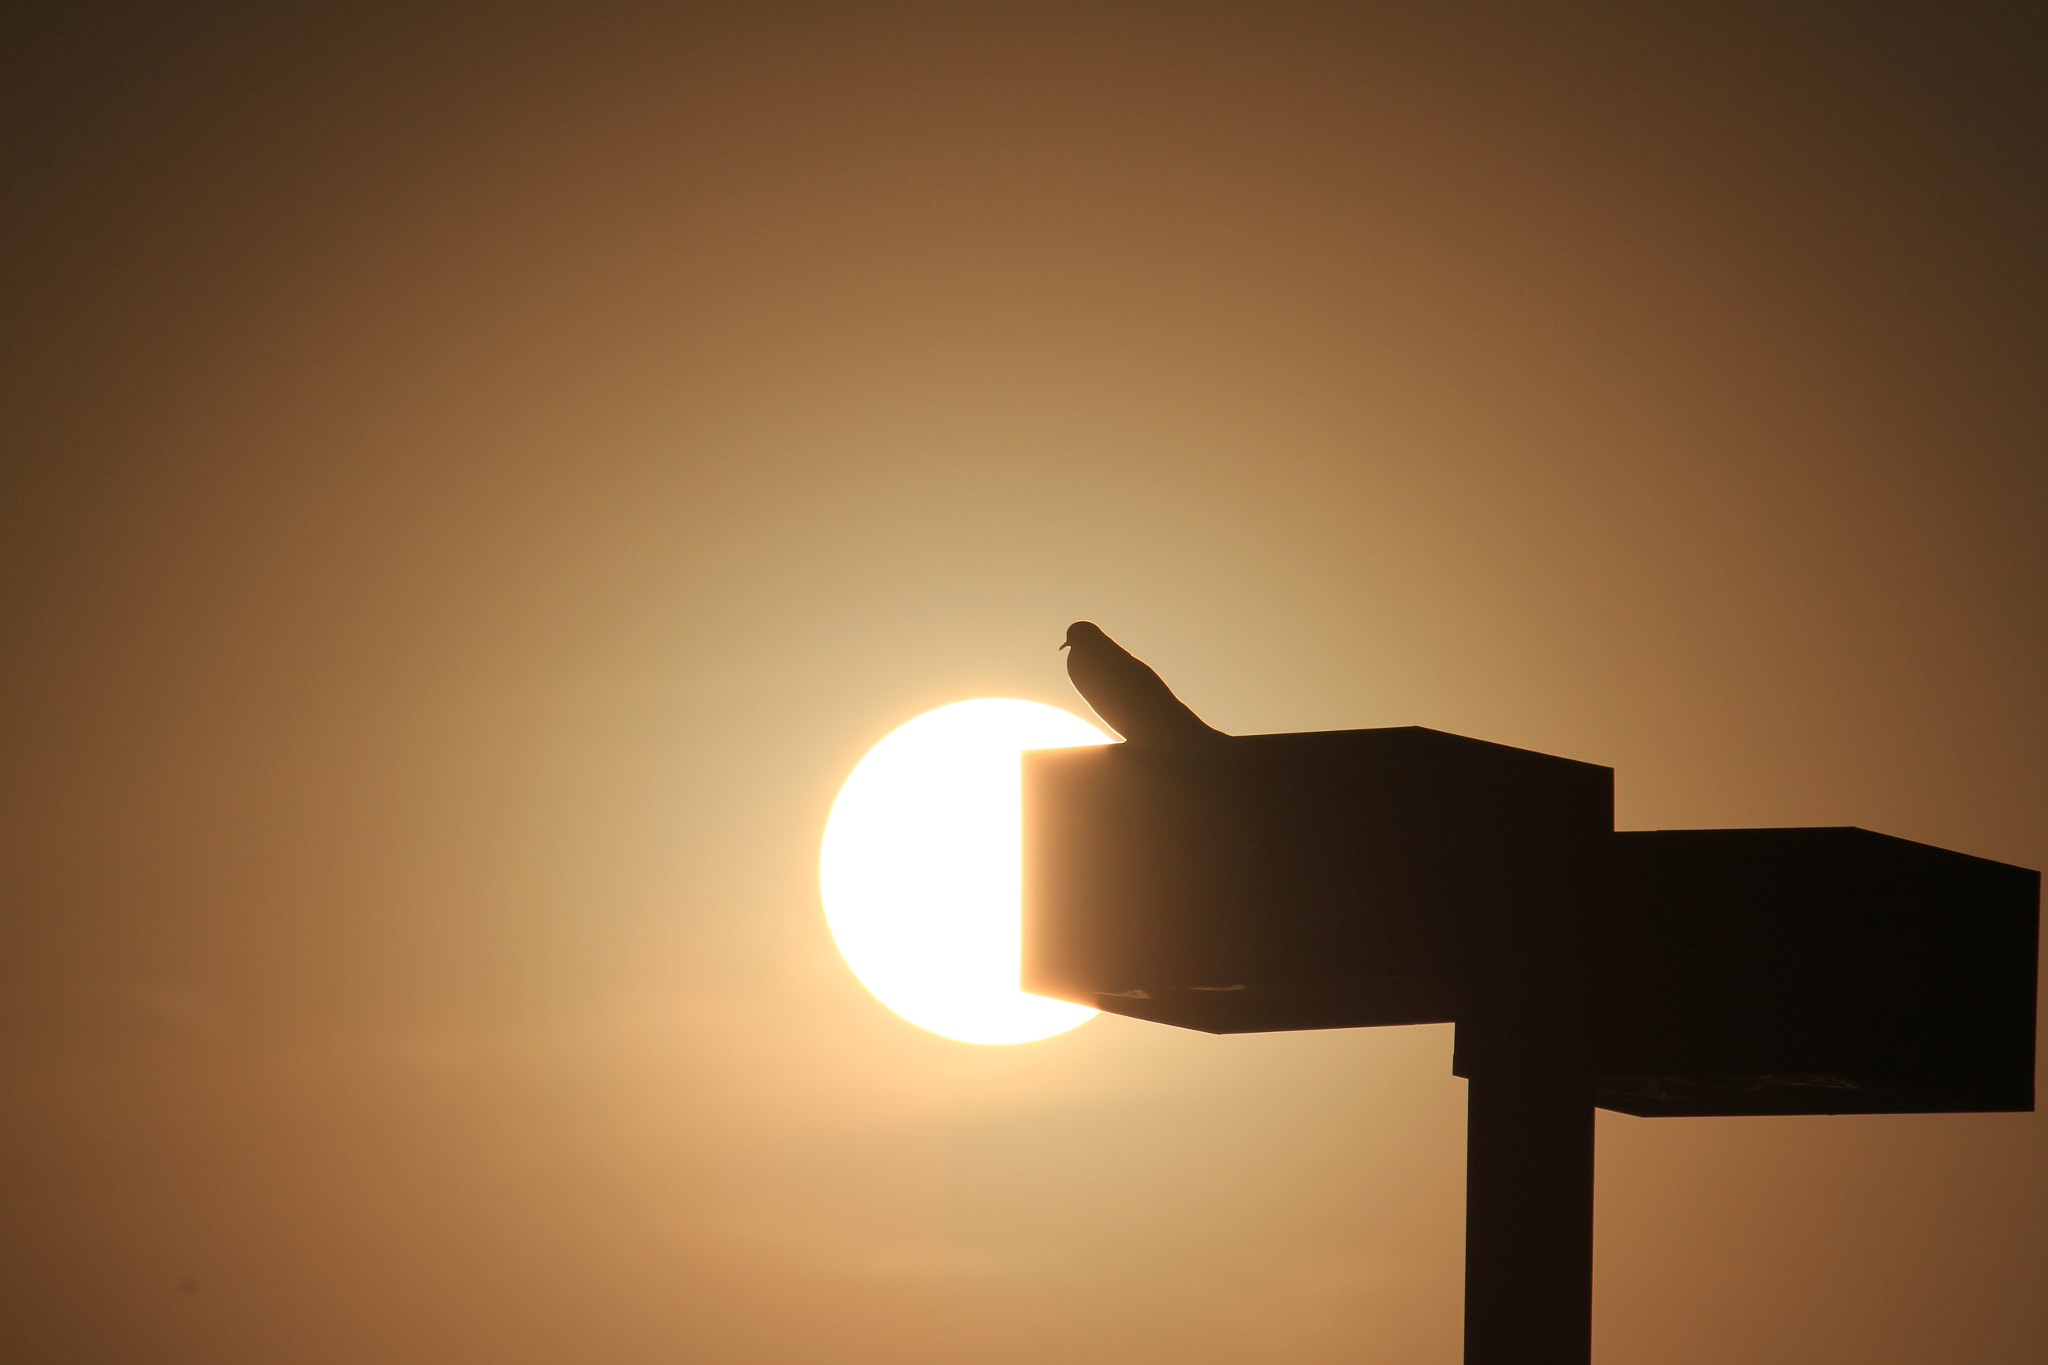 Canon EOS 7D sample photo. Bird standing over the sun photography